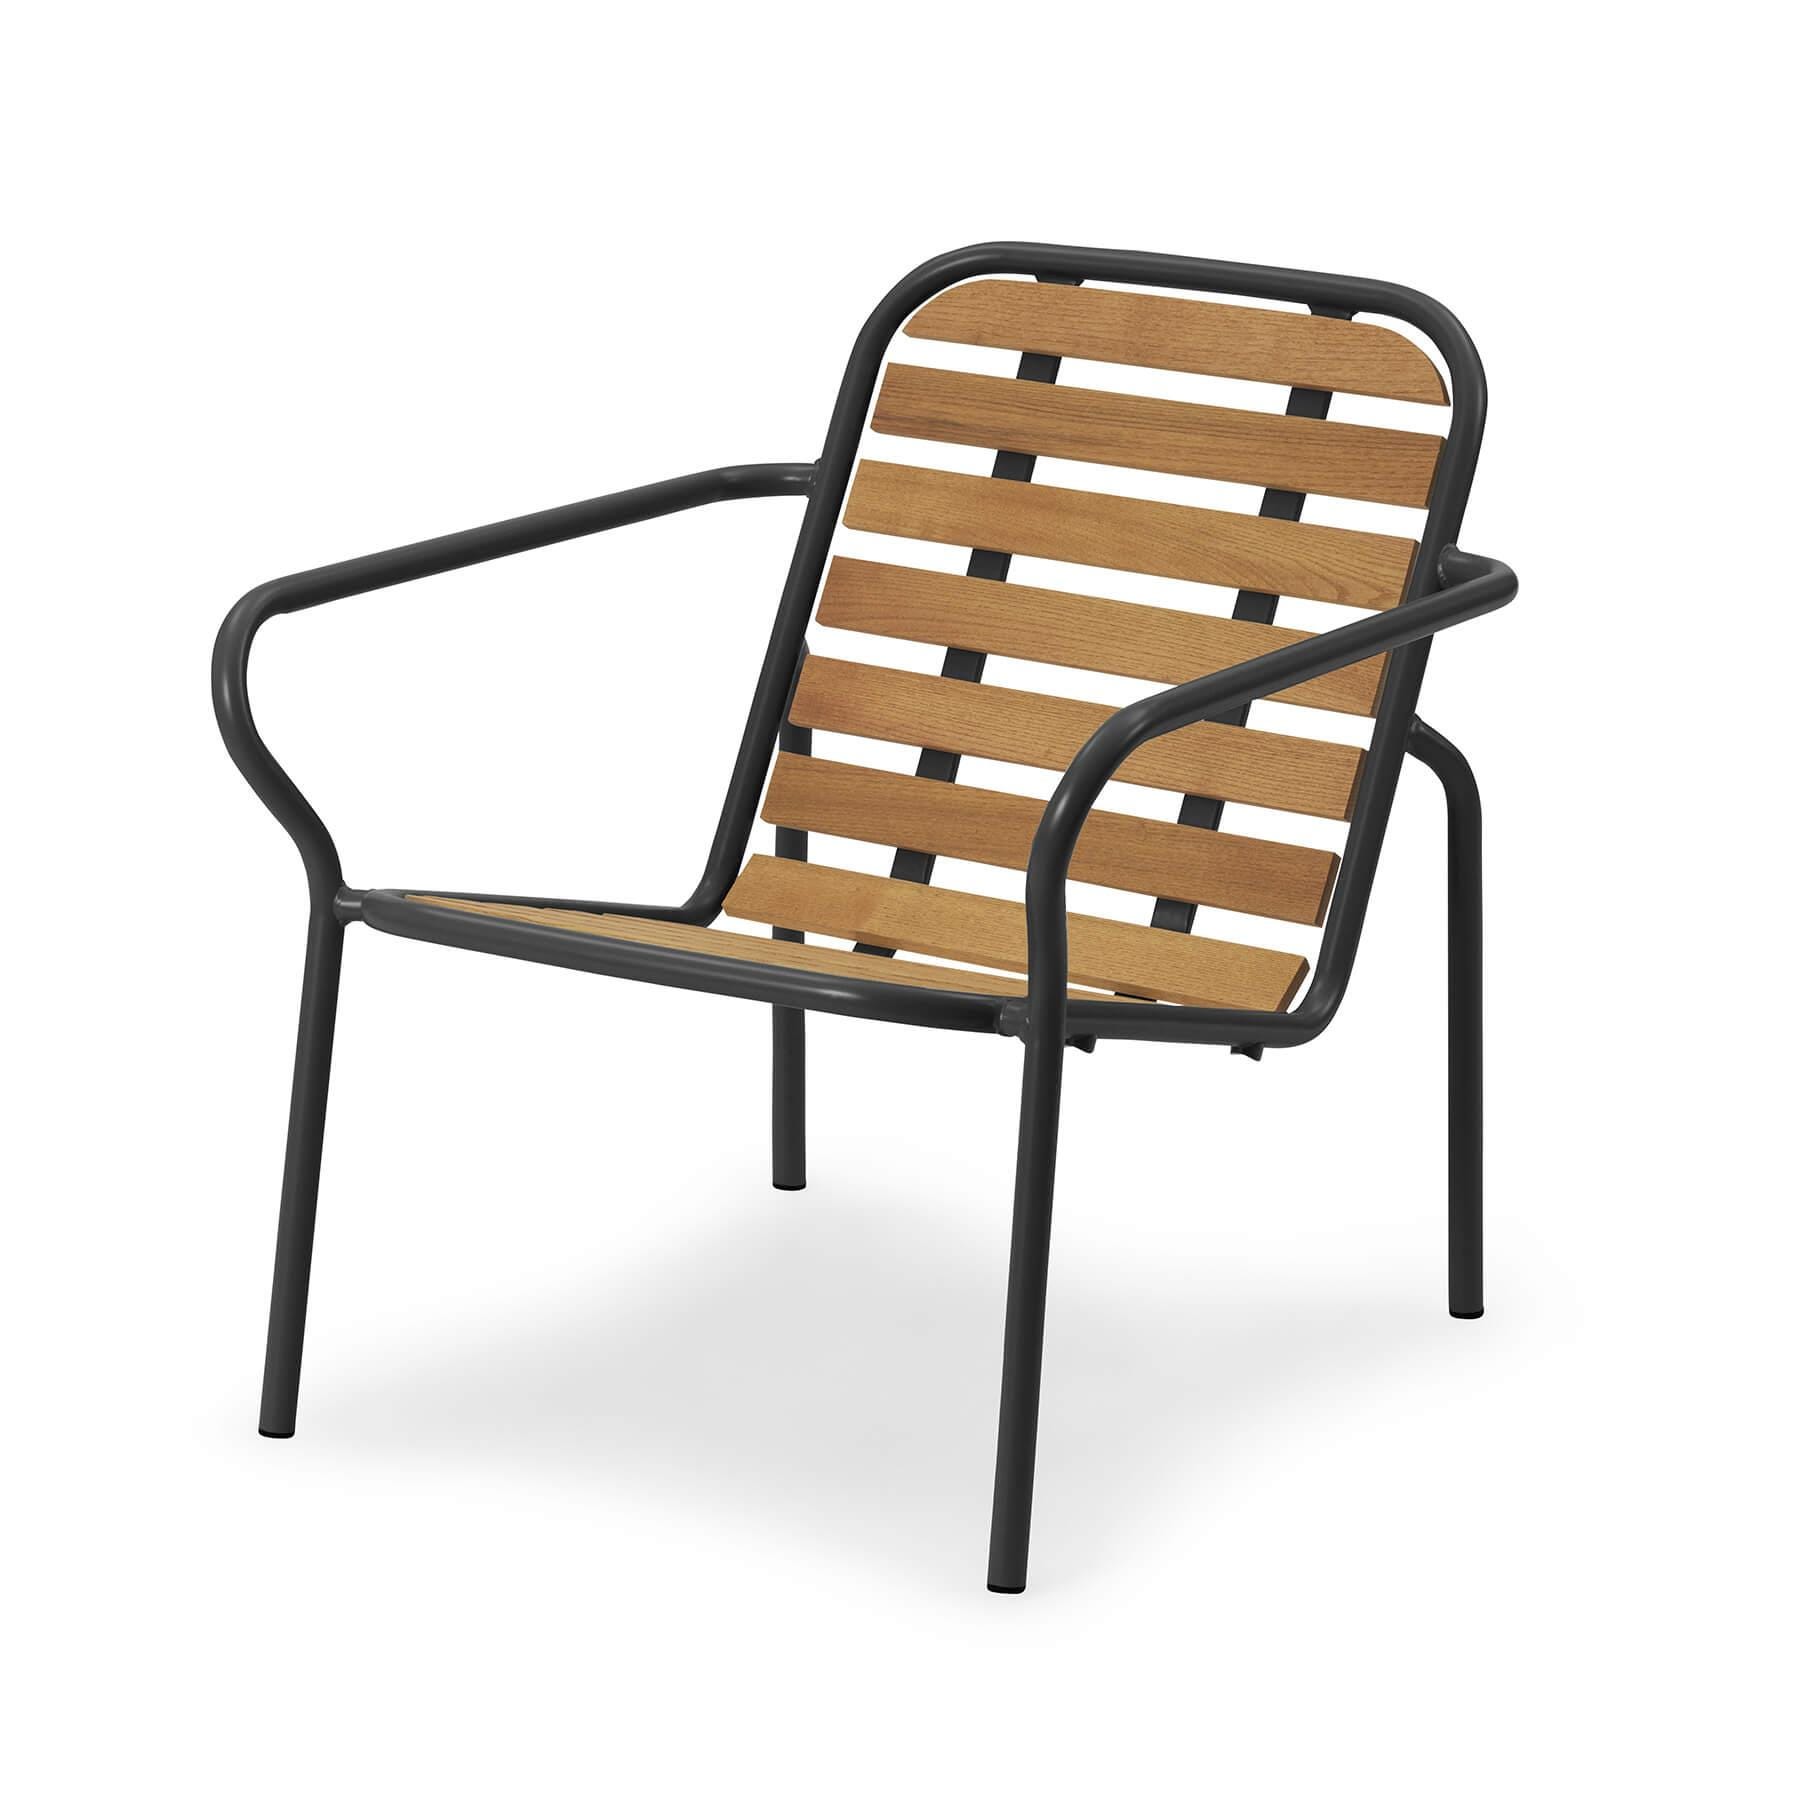 Normann Copenhagen Vig Wooden Garden Lounge Chair Black Designer Furniture From Holloways Of Ludlow